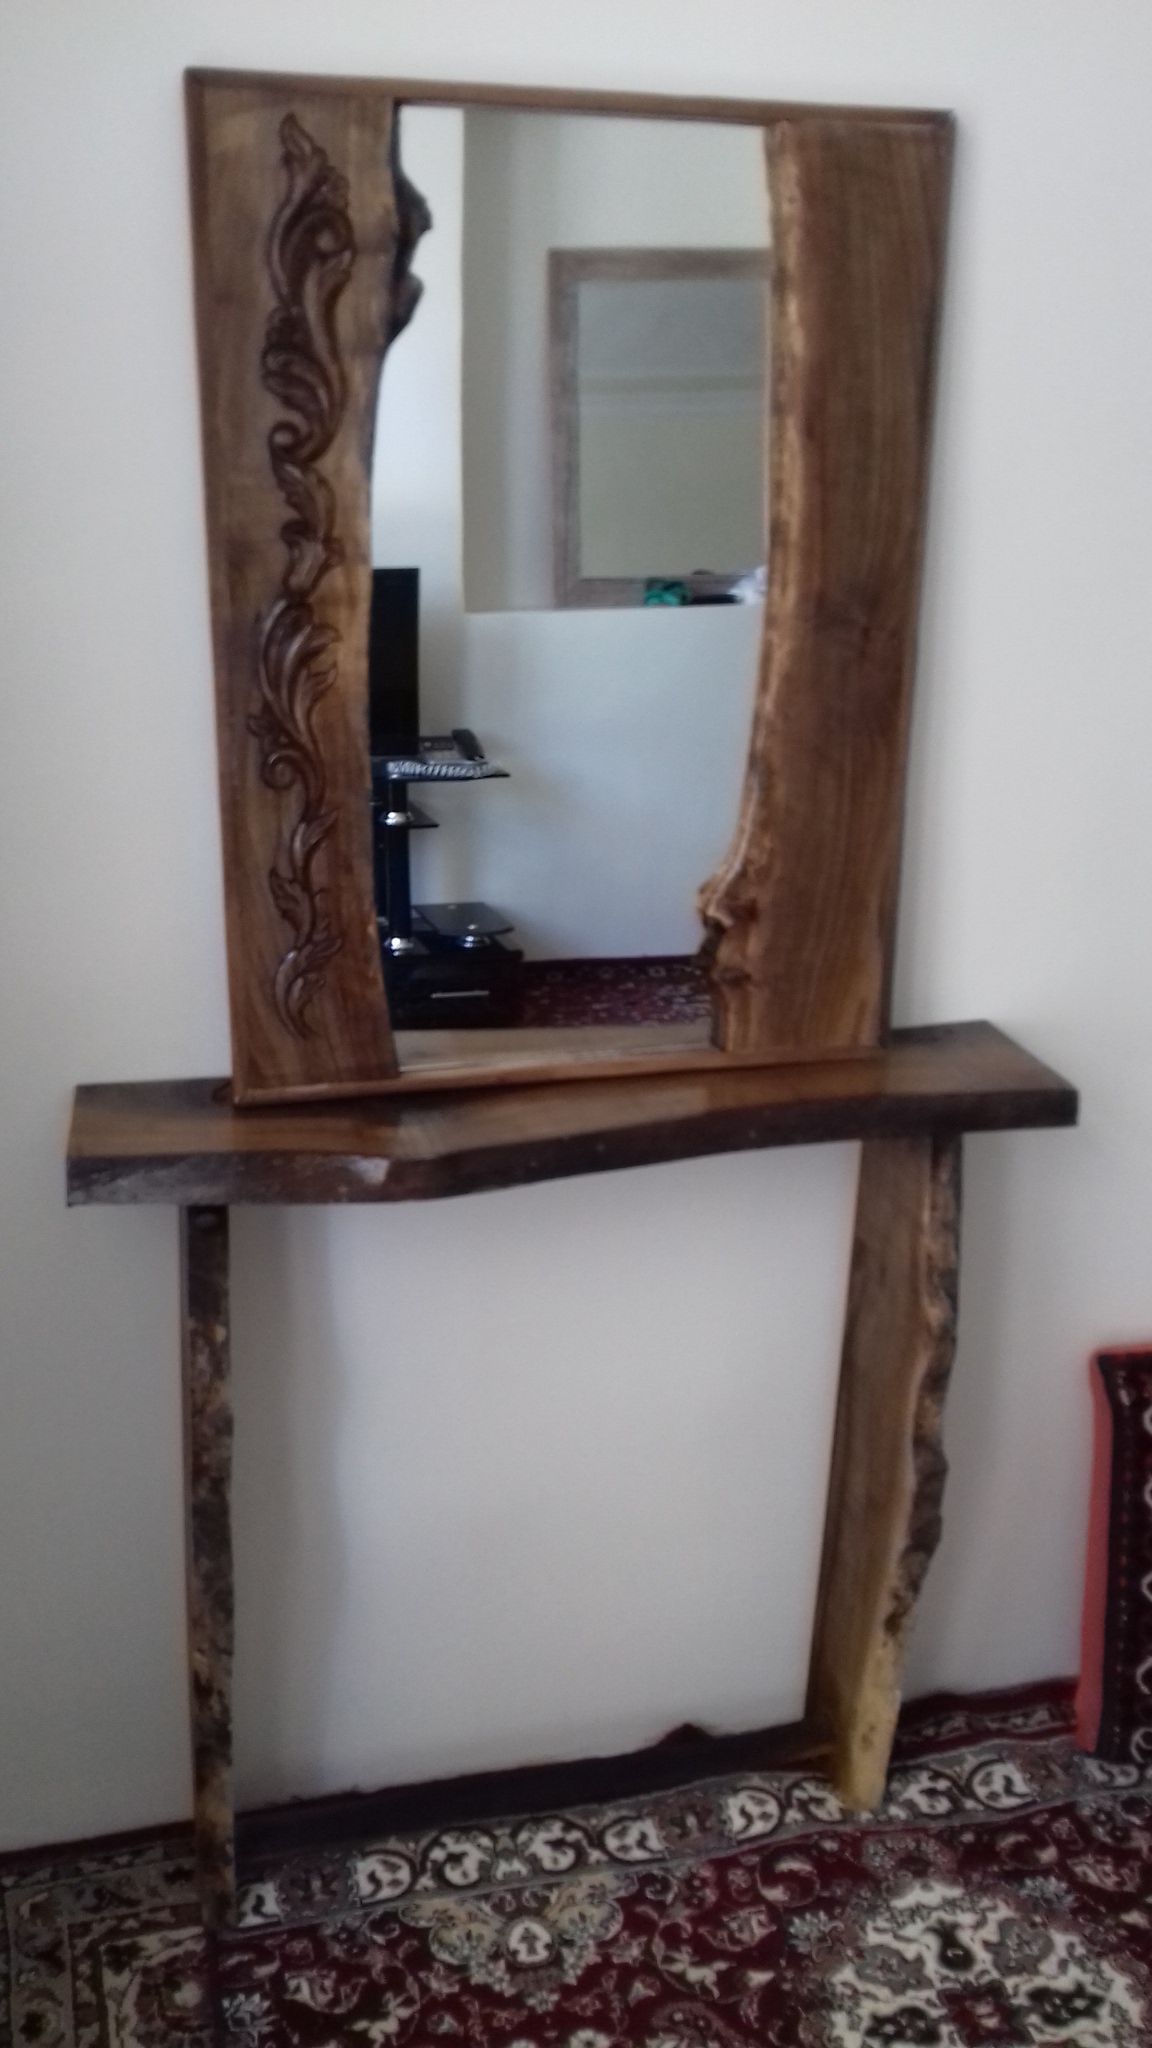 آینه دراور روستیک چوب گردو منبت و ساده